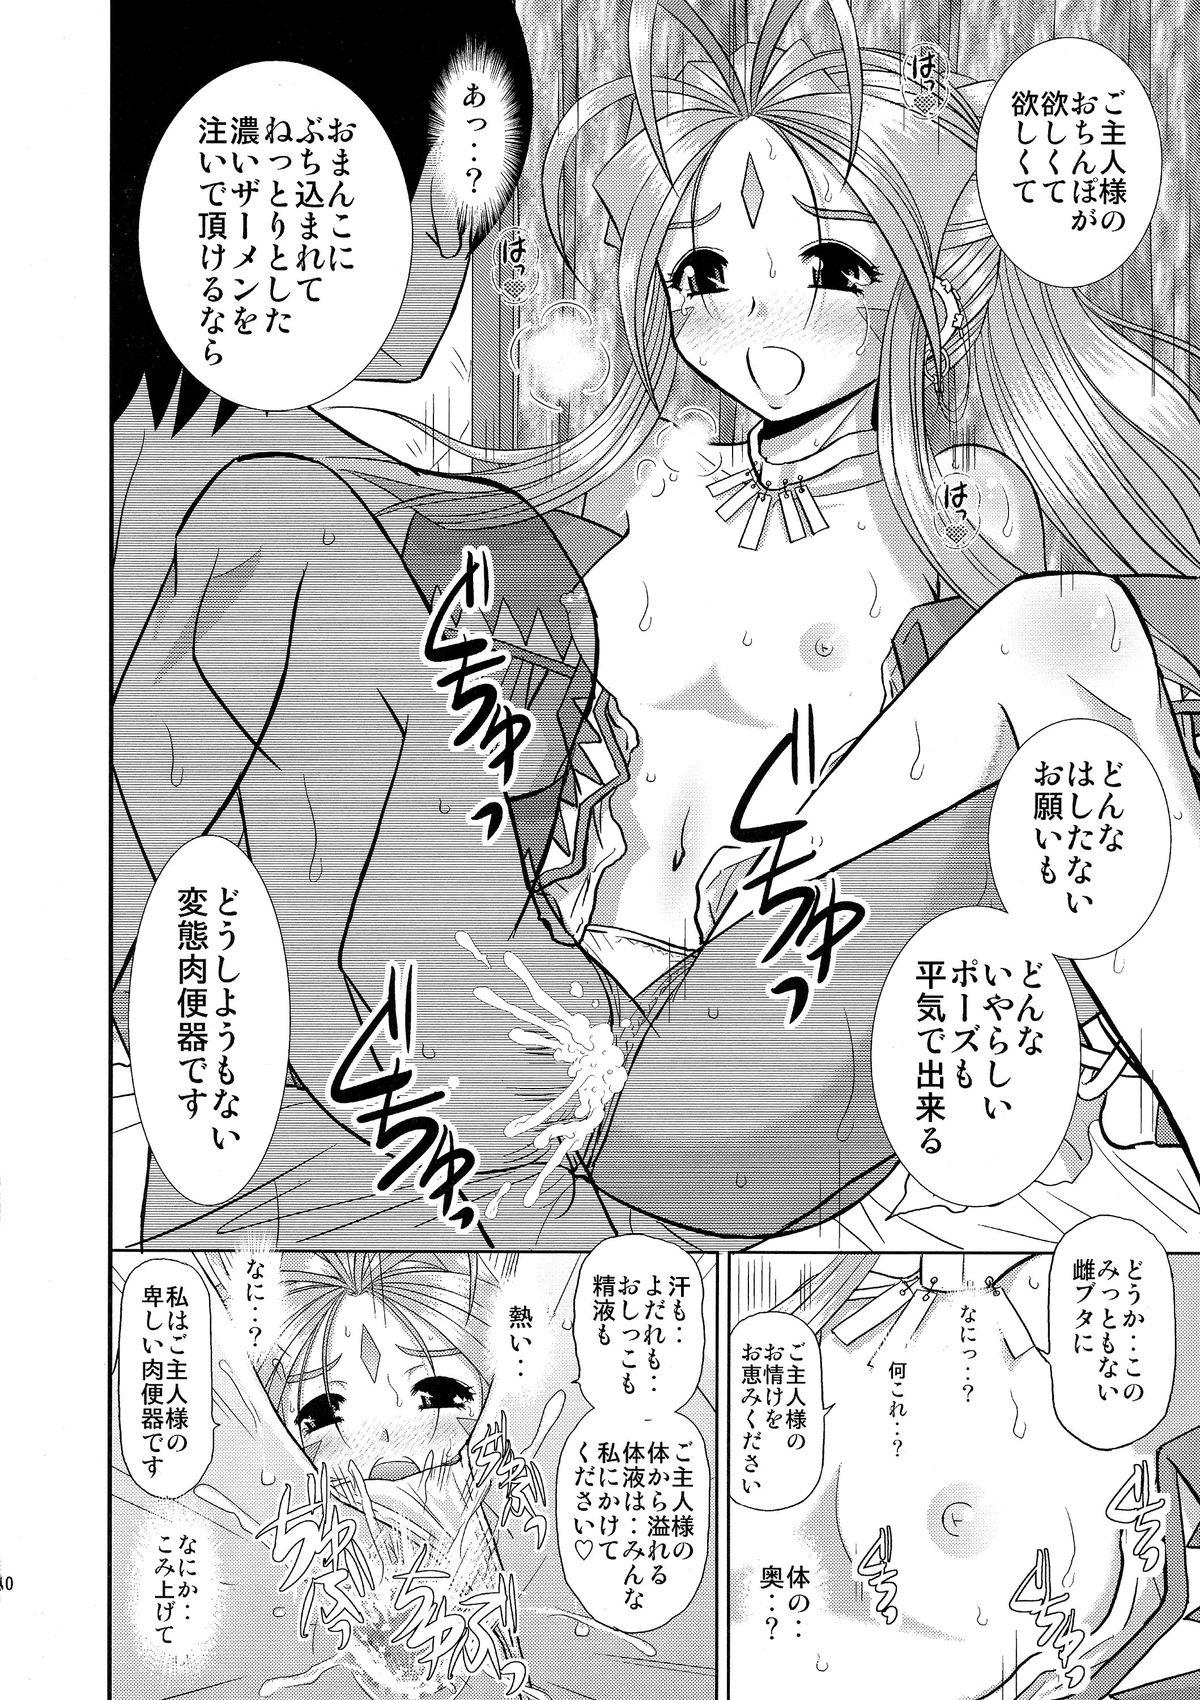 Punish Eien no Megami-sama - Ah my goddess Nena - Page 9